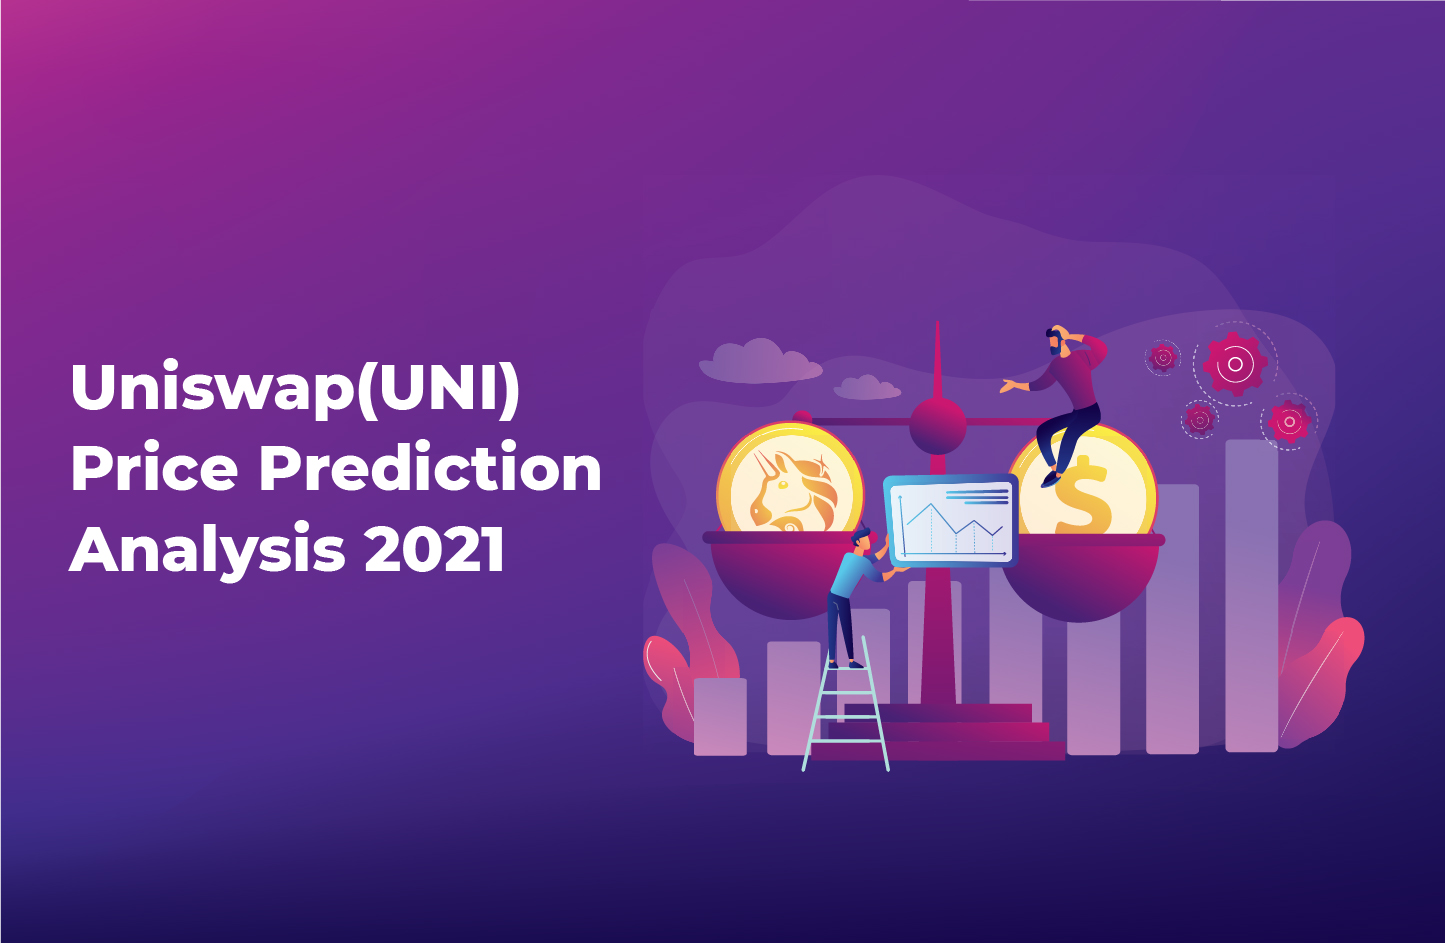 Uniswap Price Prediction Forecast 2021